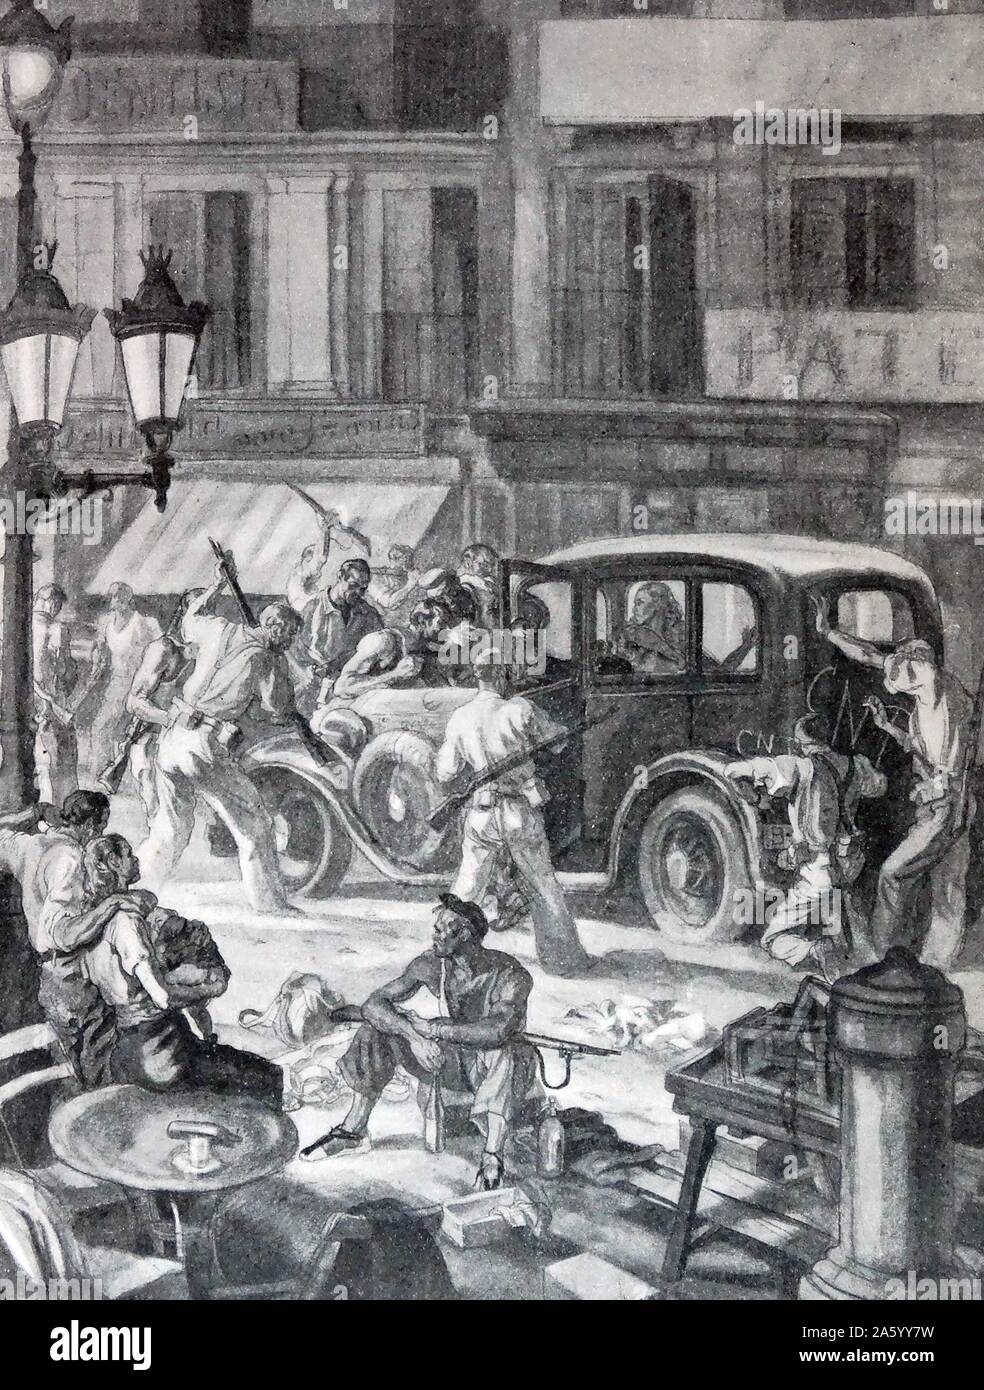 Auto wird von anarchistischen republikanischen Miliz während des spanischen Bürgerkrieges beschlagnahmt. Illustration von Carlos Saenz de Tejada (1897-1958), spanischer Maler und Illustrator; identifiziert mit der nationalistischen (faschistischen) Seite im spanischen Bürgerkrieg. Stockfoto